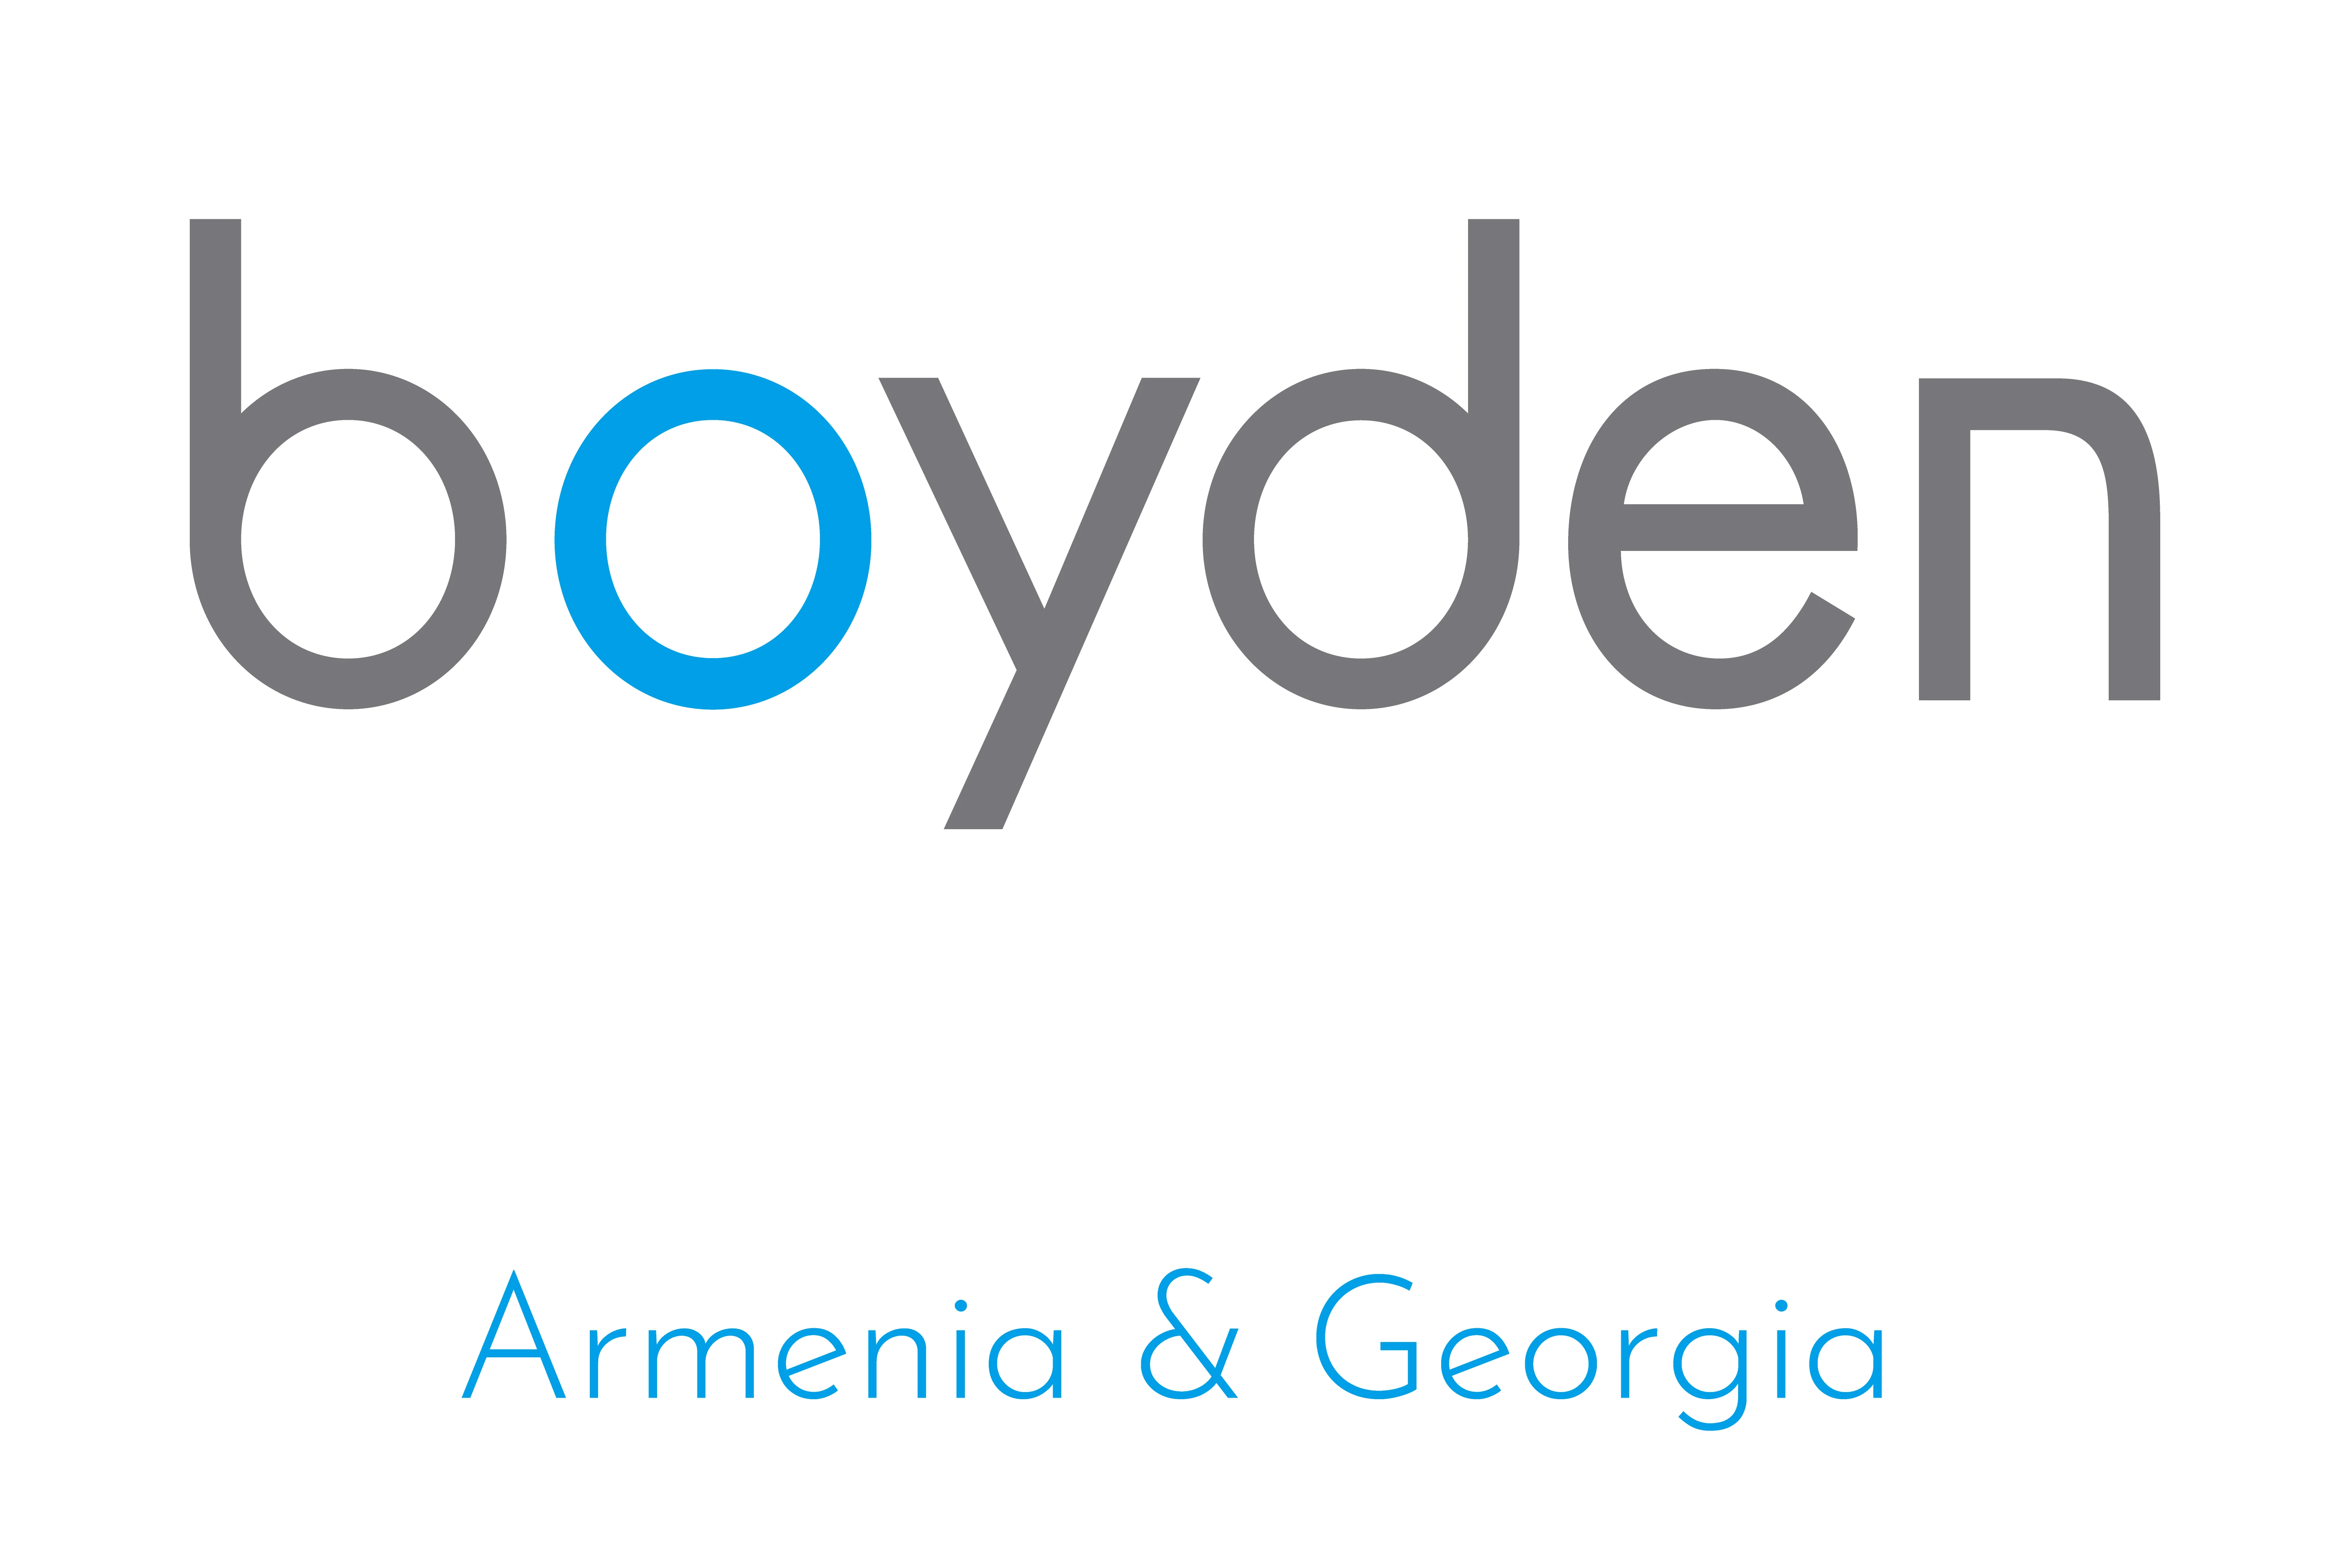 79-boyden-logo-vector-16769766287148.jpg